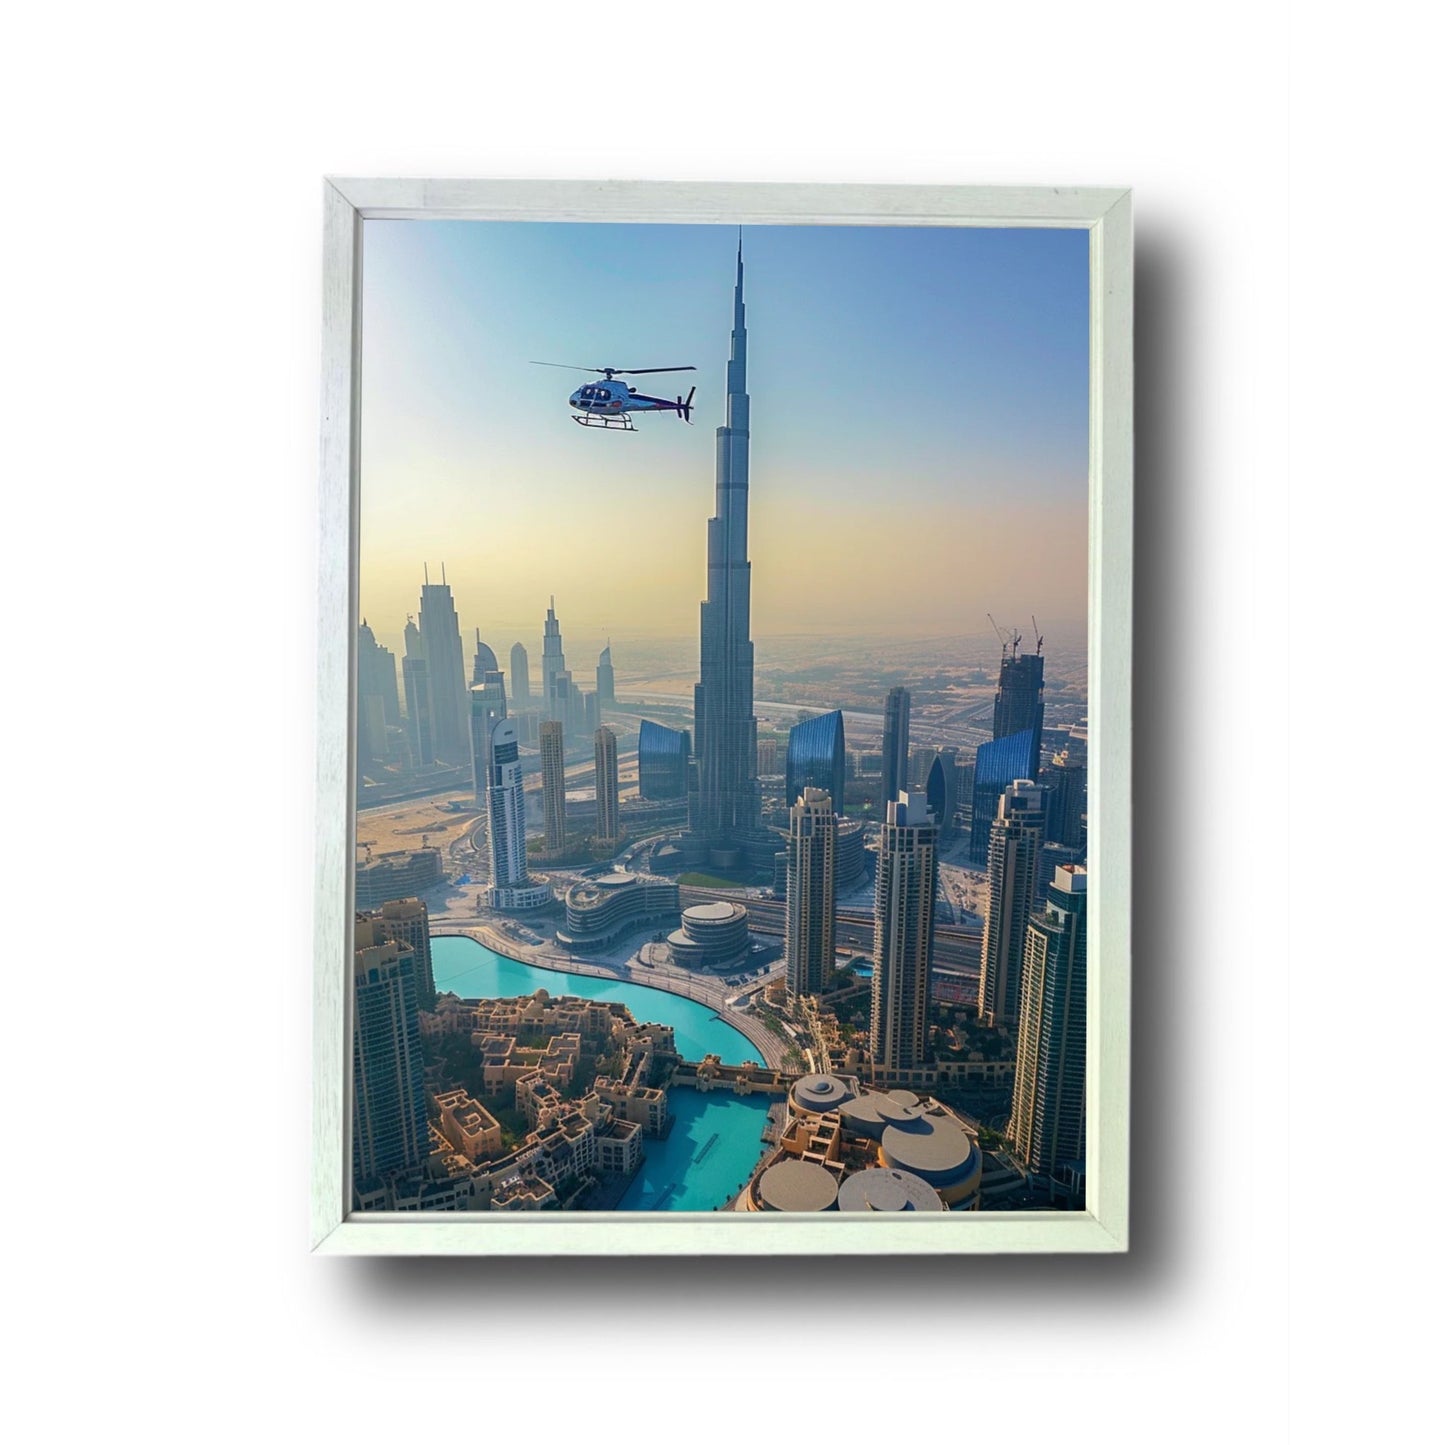 Dubai Helicopter Tour 4.0